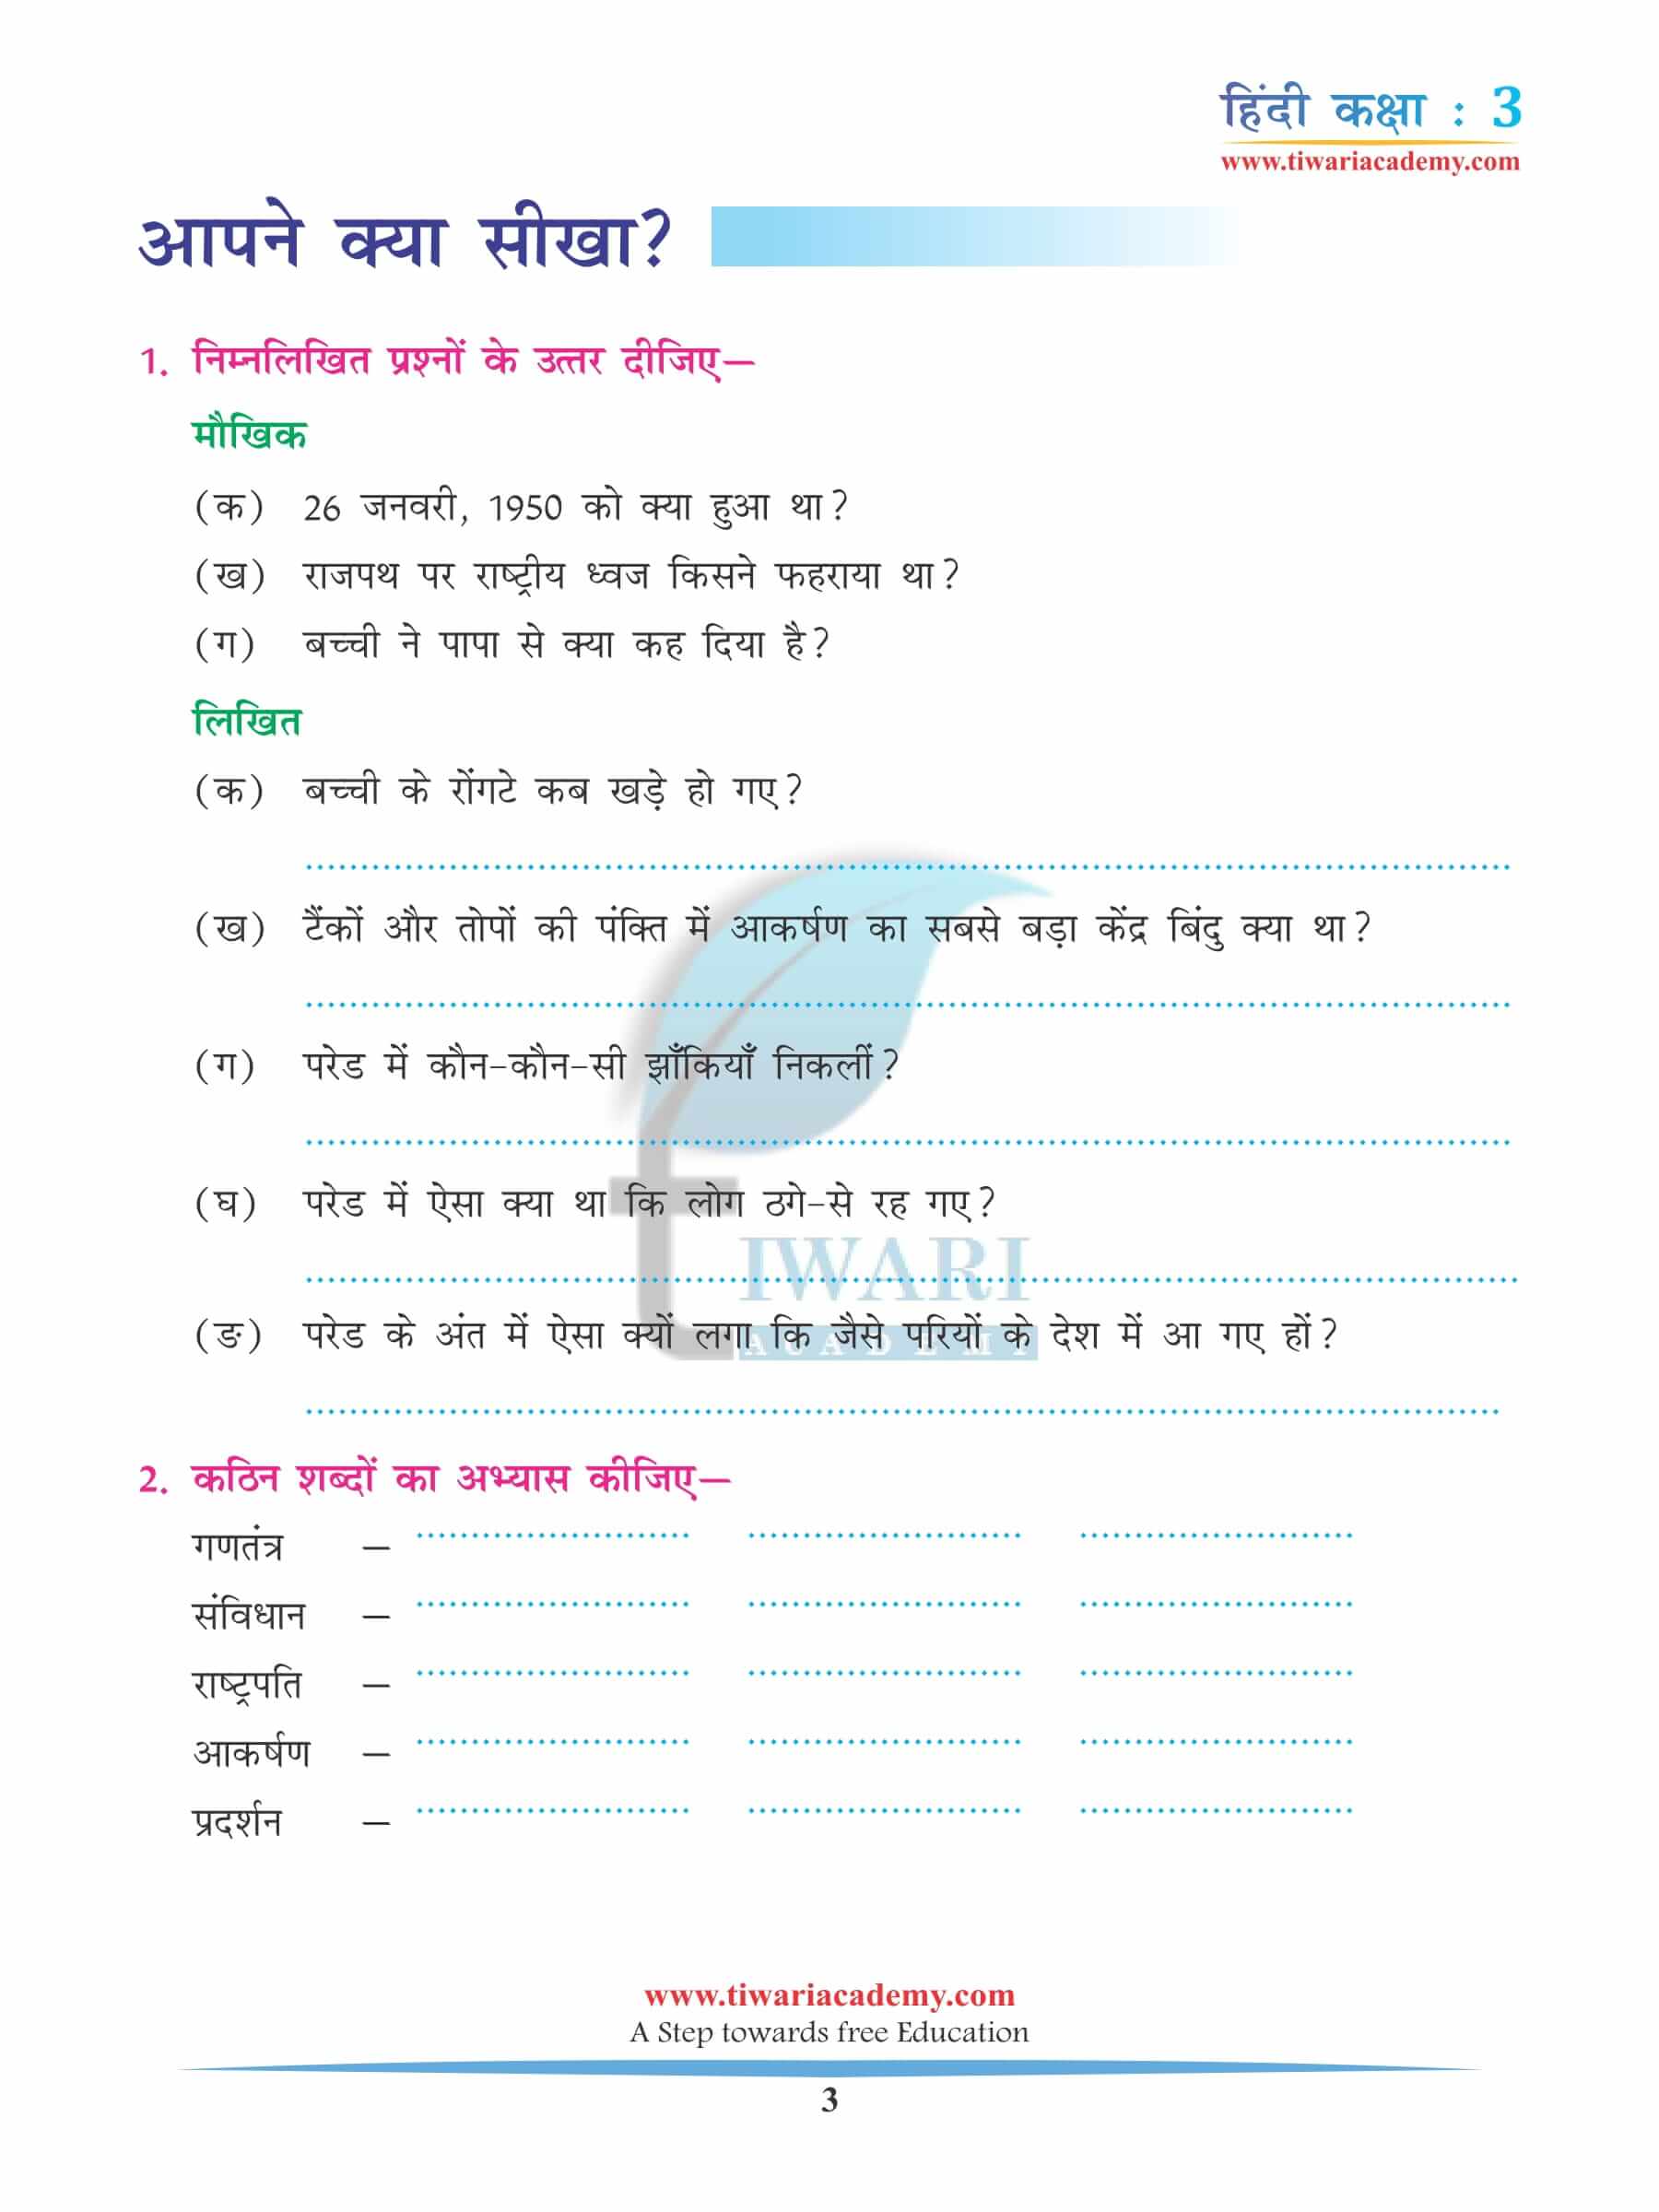 कक्षा 3 हिंदी अध्याय 8 अभ्यास के लिए किताब